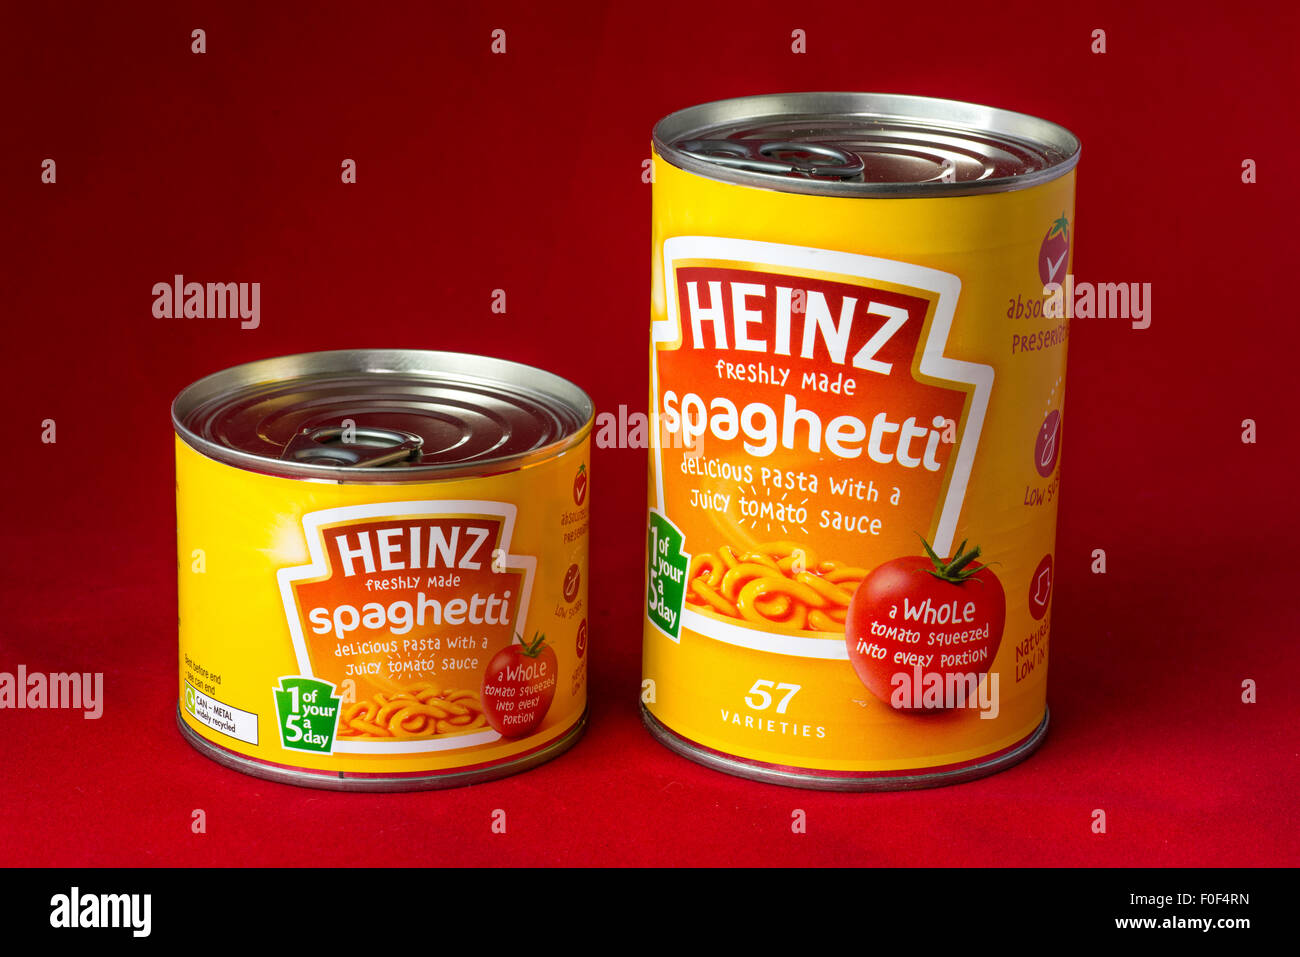 Heinz spaghetti immagini e fotografie stock ad alta risoluzione - Alamy